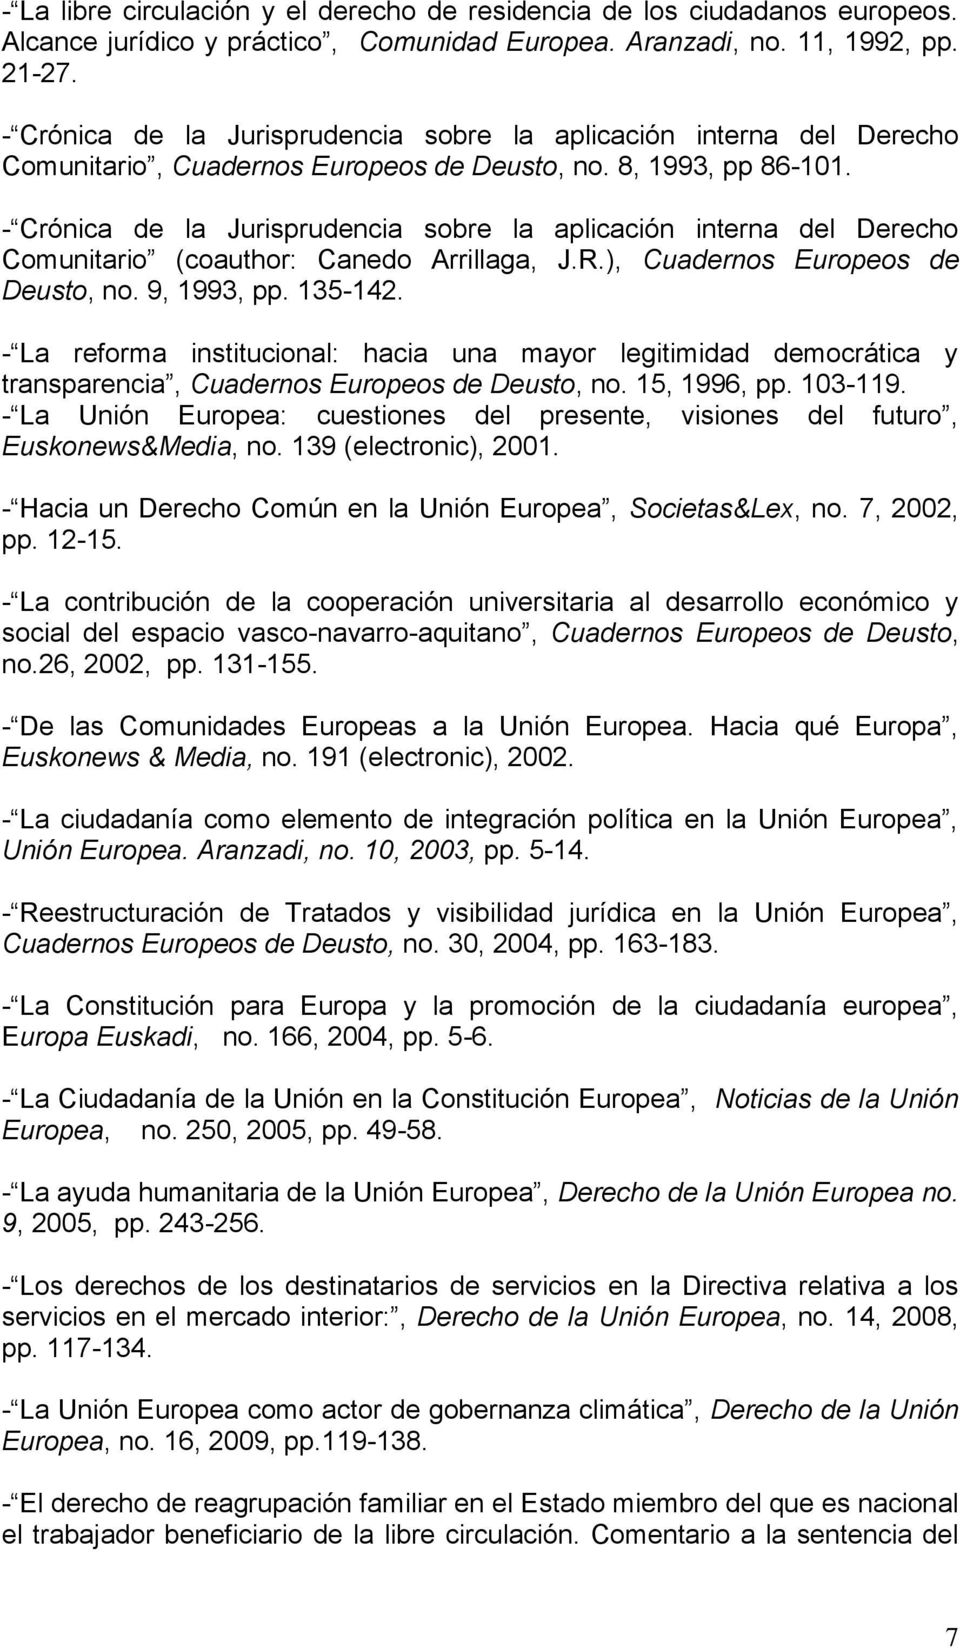 - Crónica de la Jurisprudencia sobre la aplicación interna del Derecho Comunitario (coauthor: Canedo Arrillaga, J.R.), Cuadernos Europeos de Deusto, no. 9, 1993, pp. 135-142.